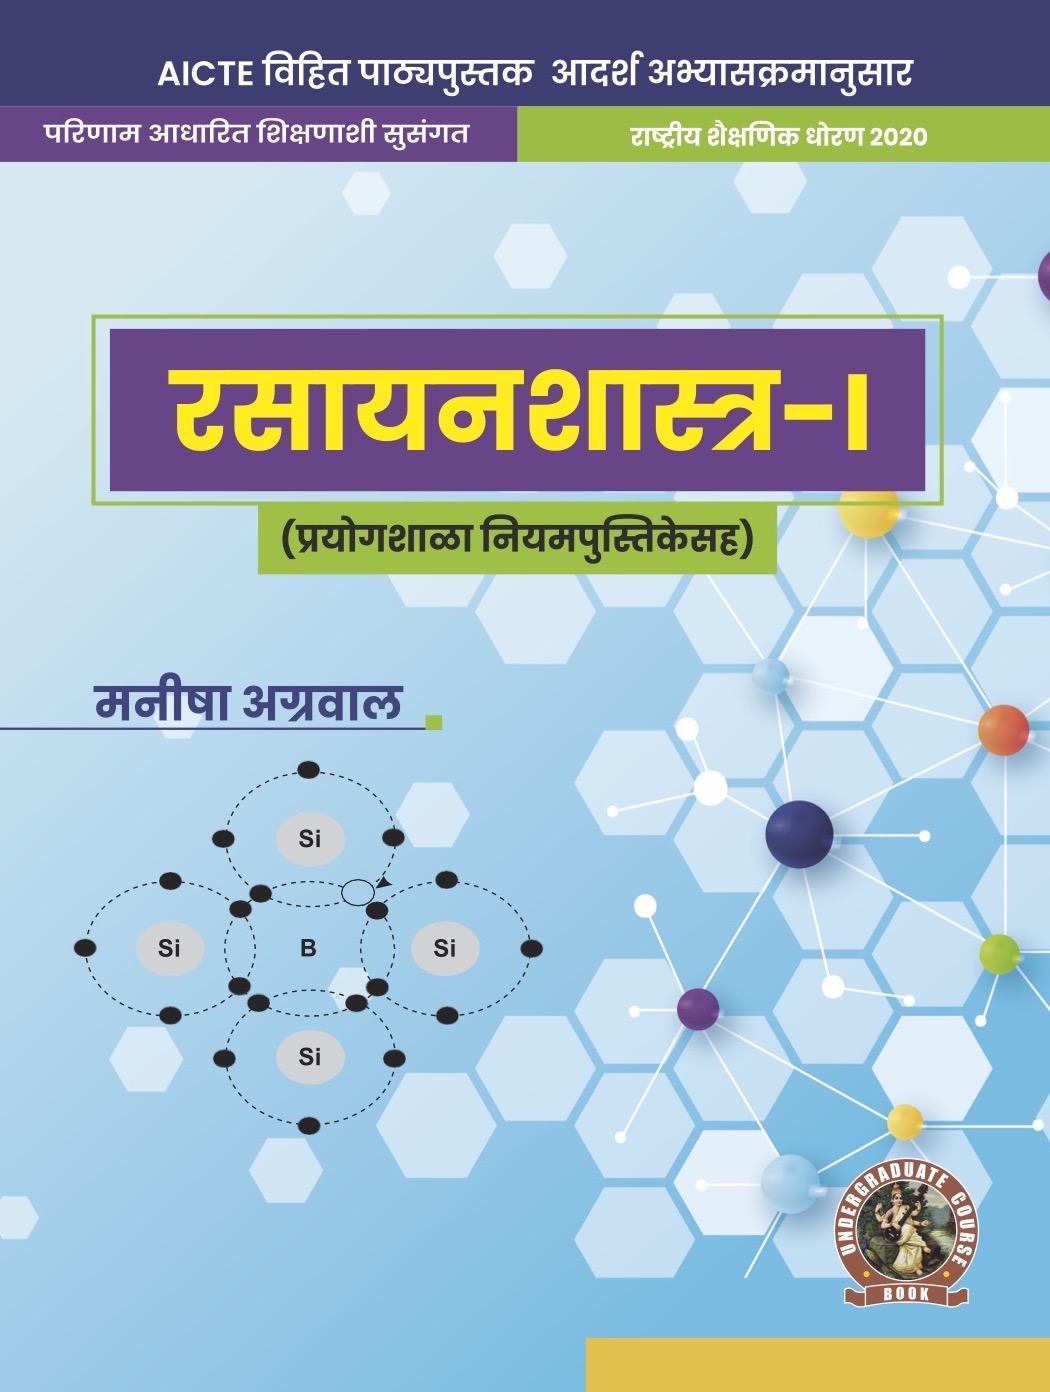 Chemistry-I (with Lab Manual) (Marathi)